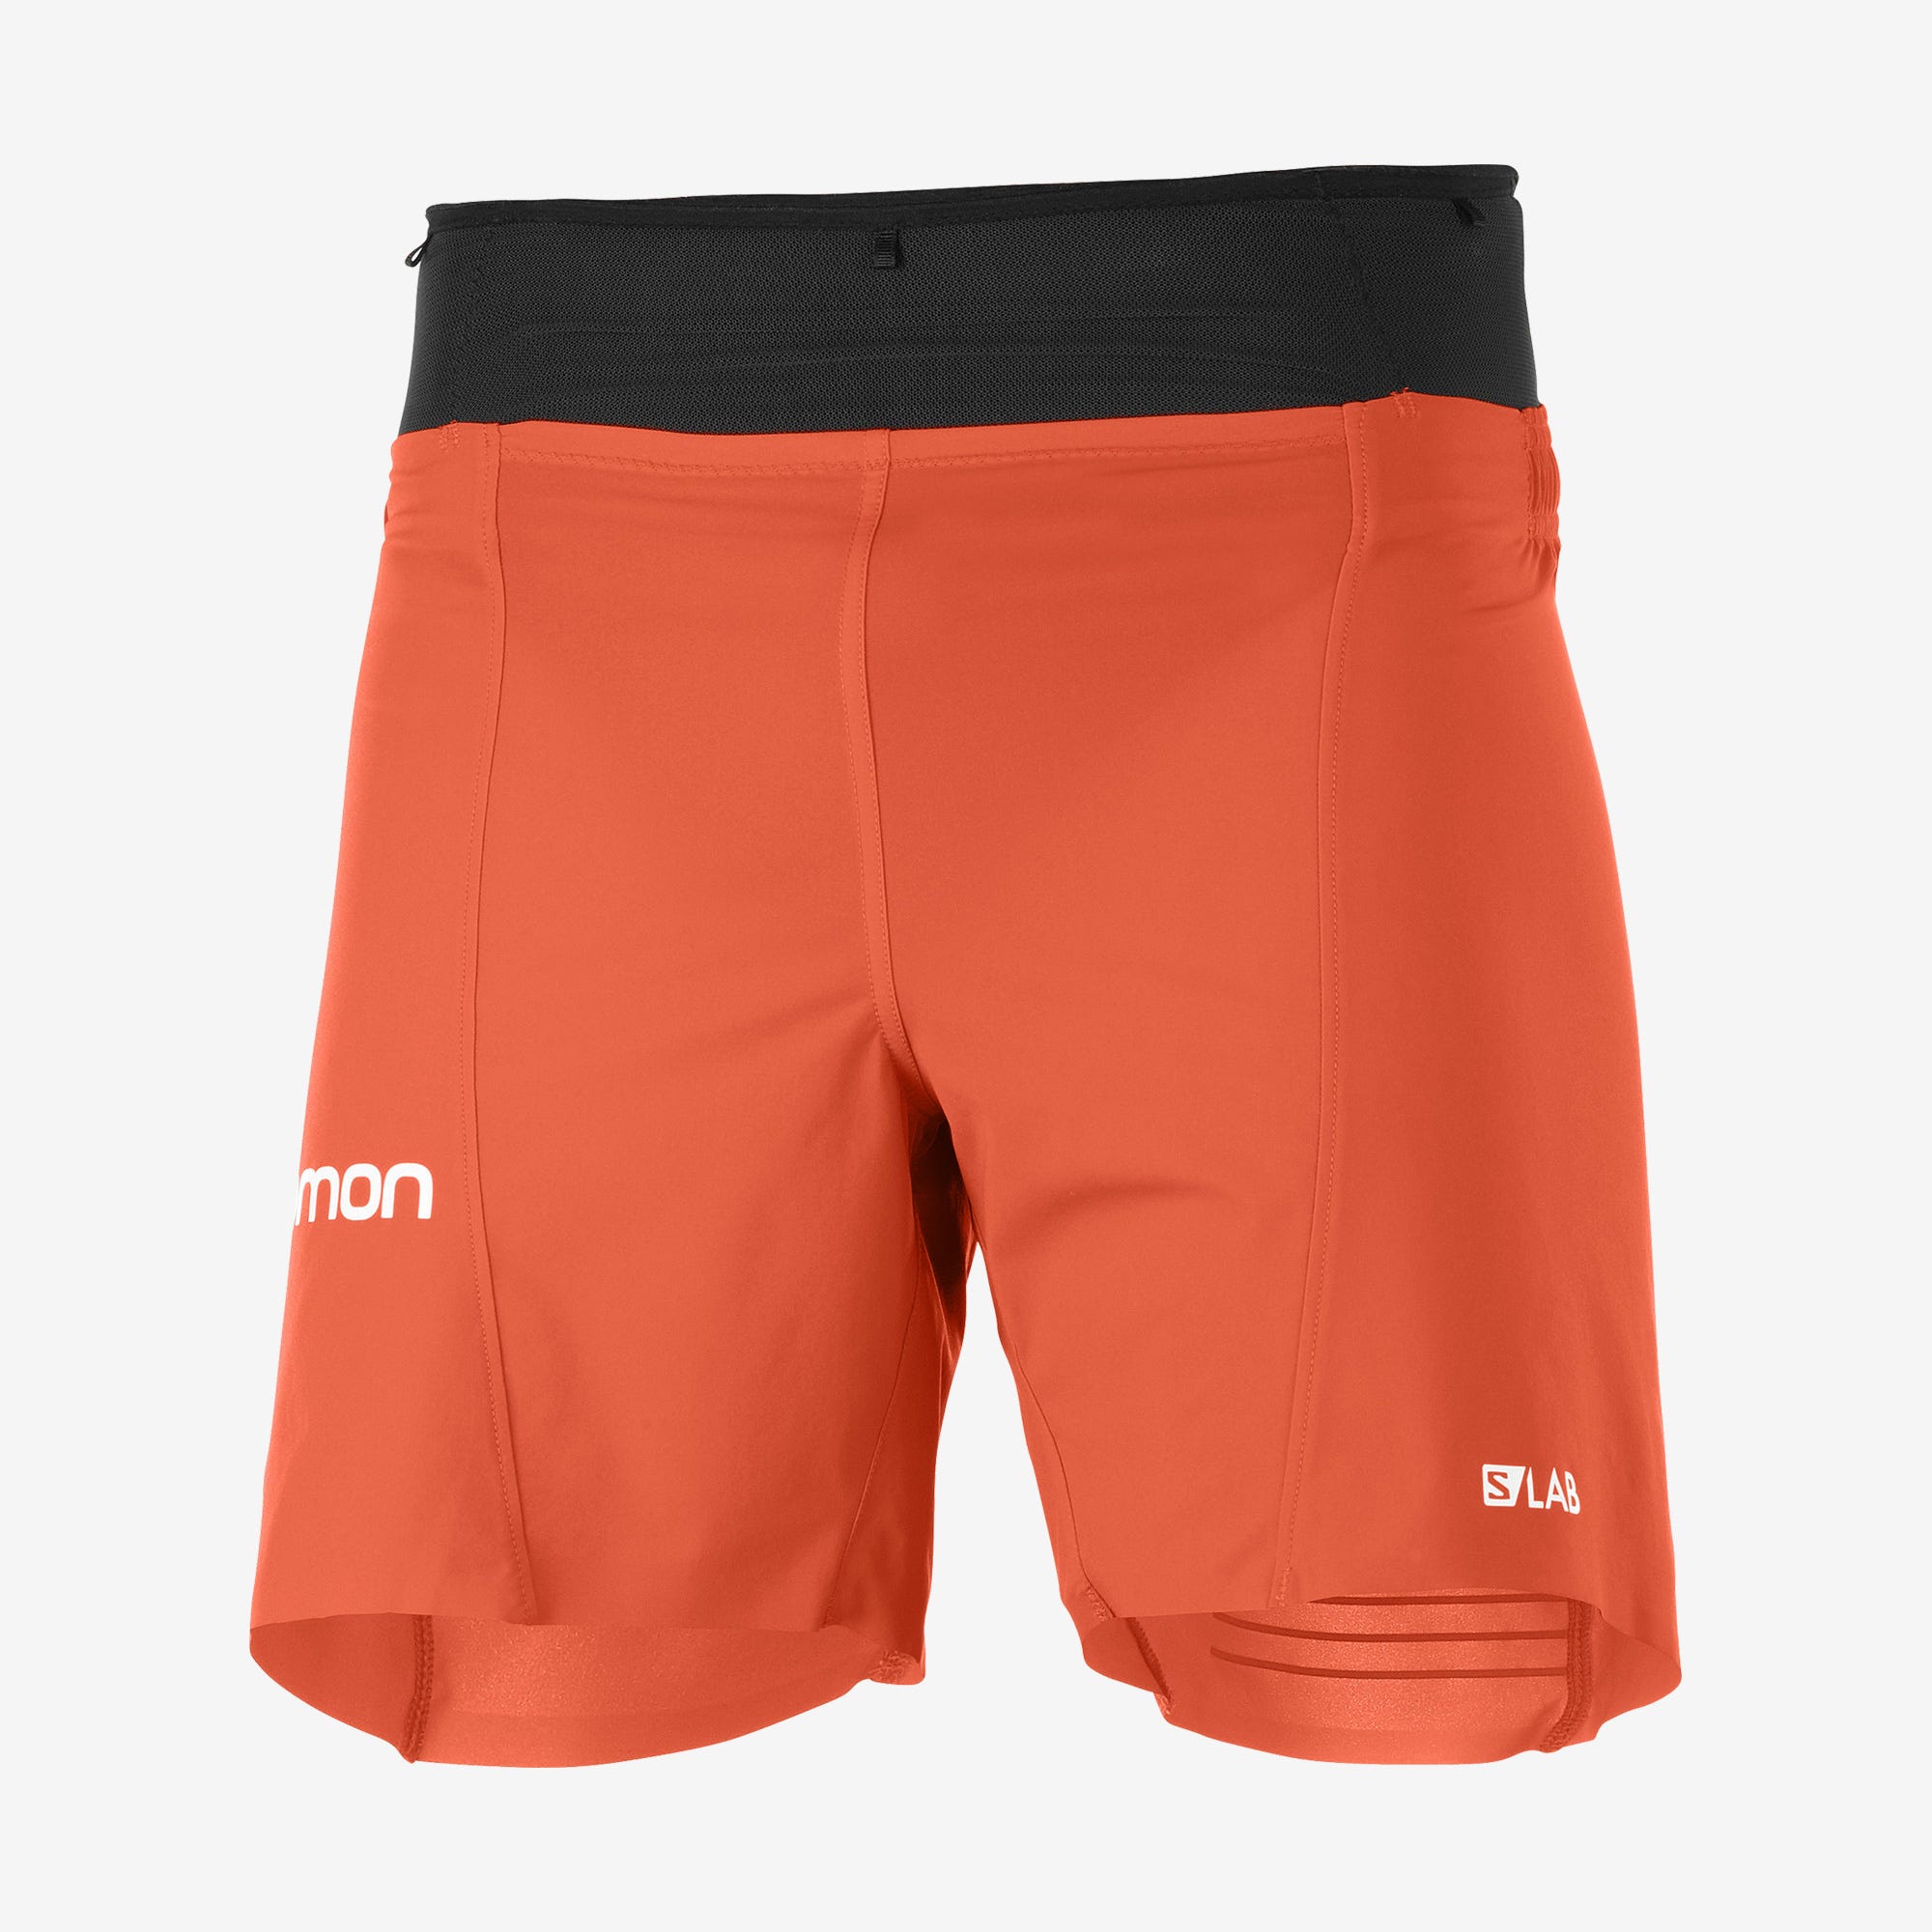 Salomon S/Lab Sense 6” shorts 